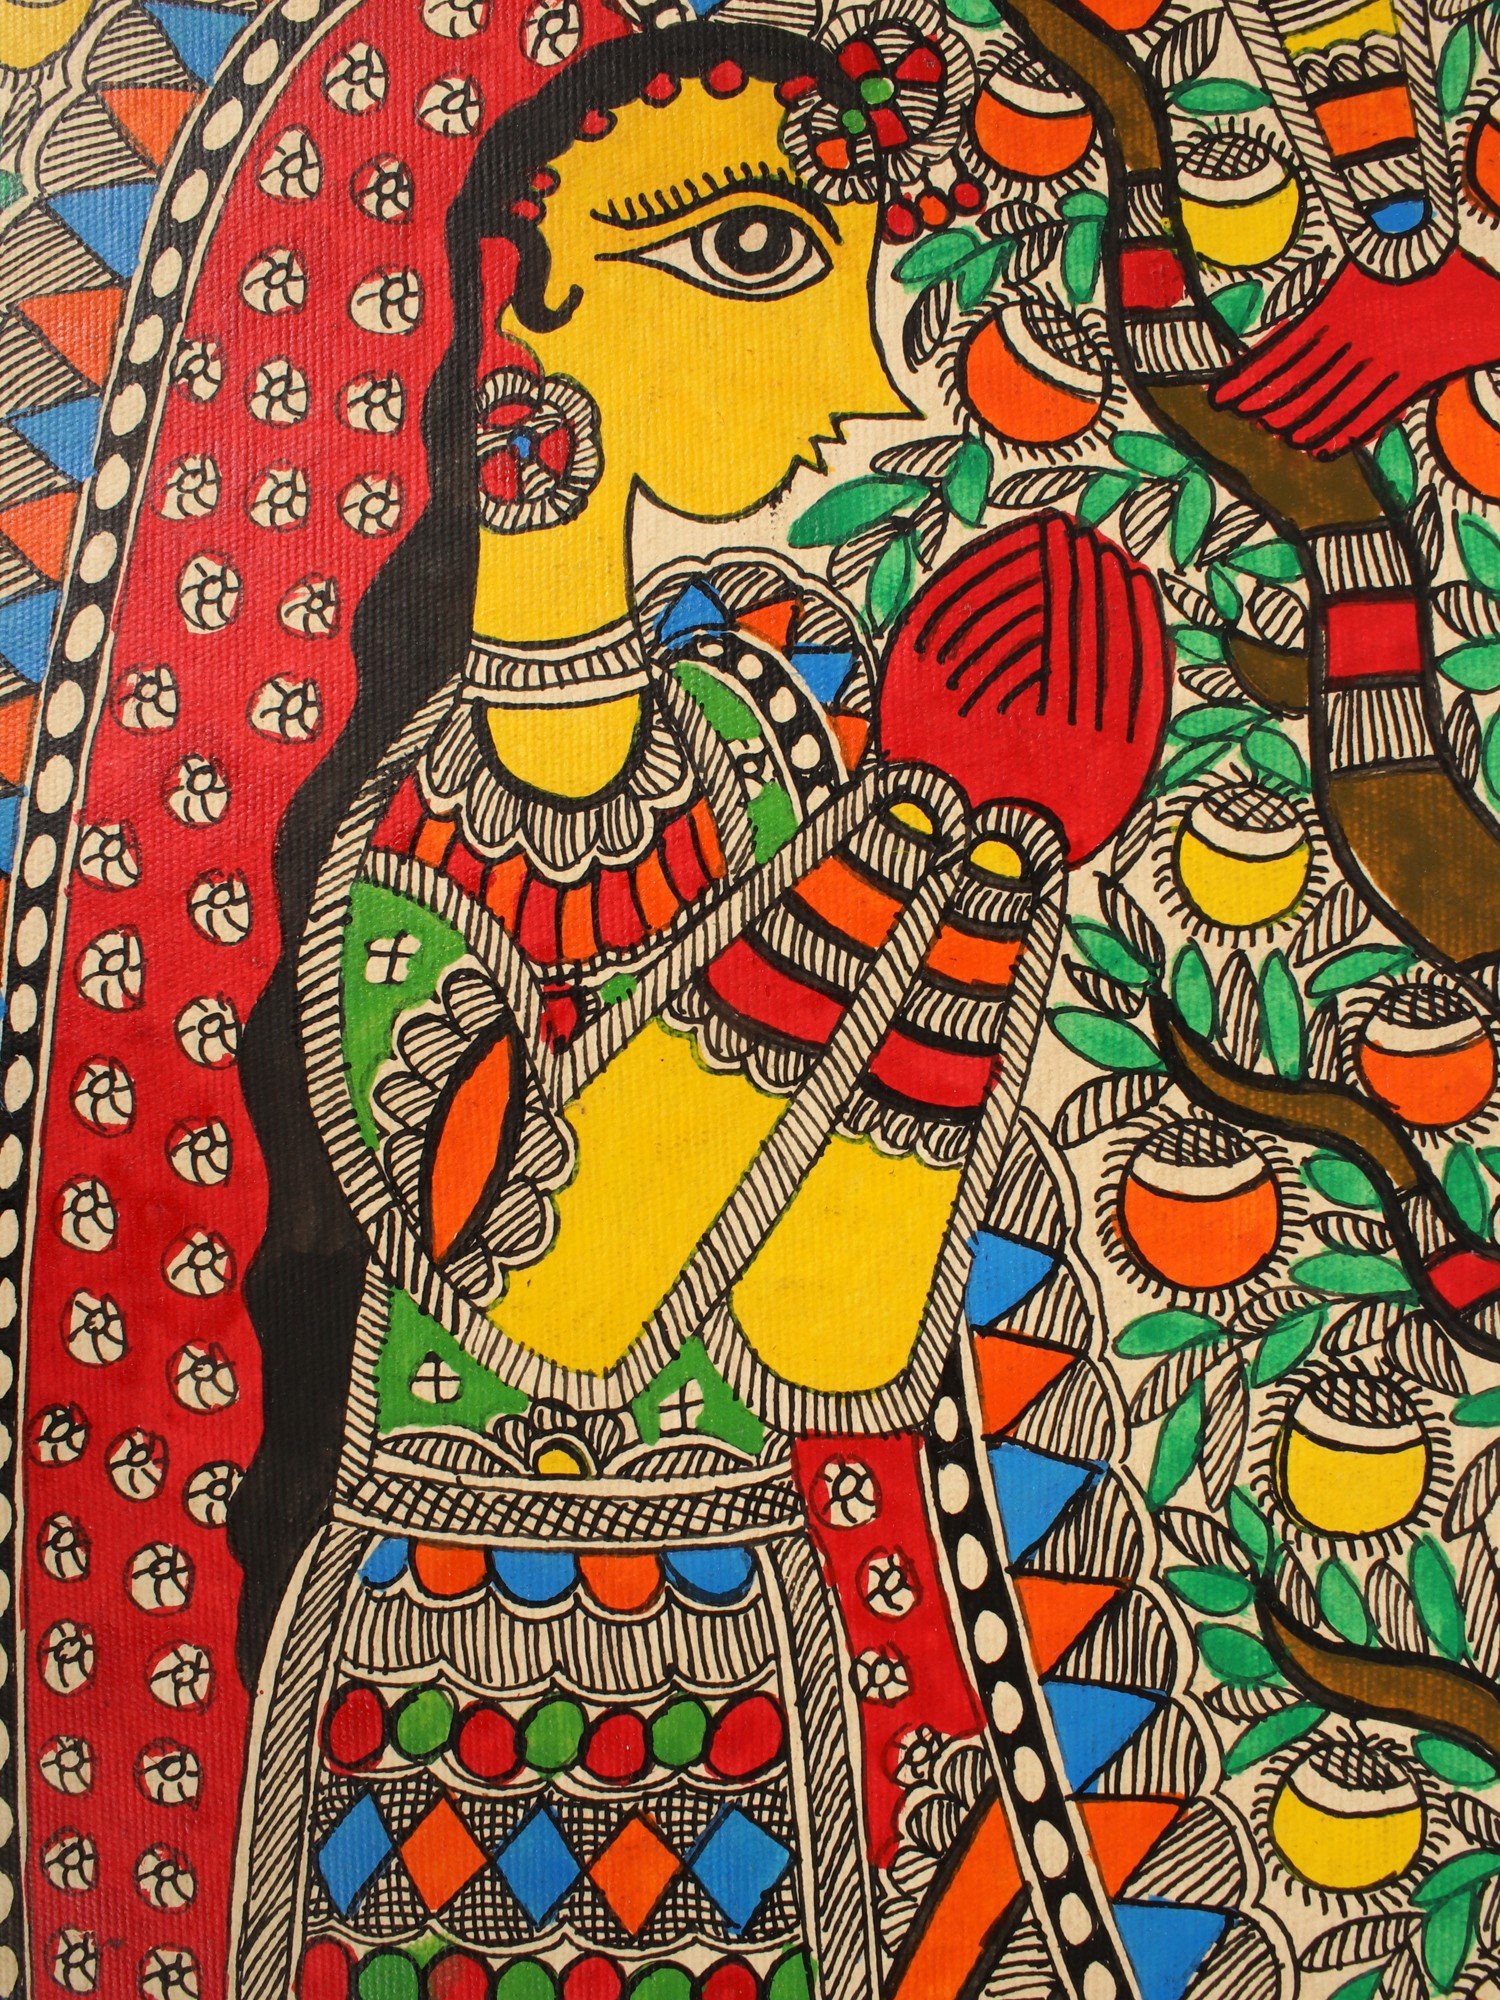 Train In India | Madhubani Painting | Exotic India Art